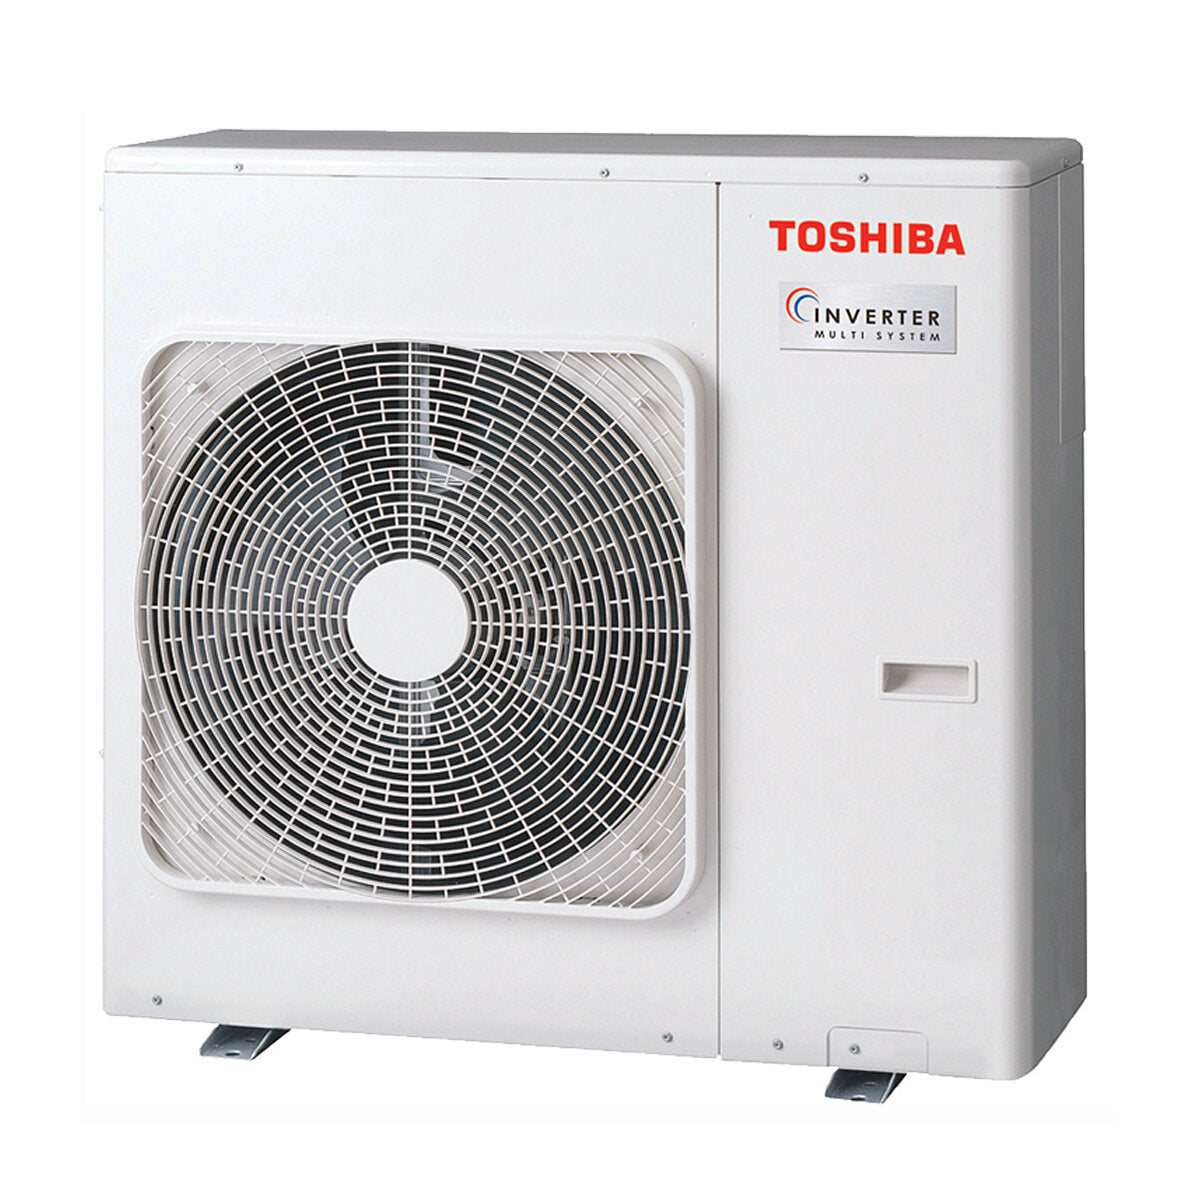 Toshiba Ductable Air Conditioner U2 penta split 7000 + 9000 + 9000 + 9000 + 16000 BTU inverter A++ unité extérieure 10,0 kW